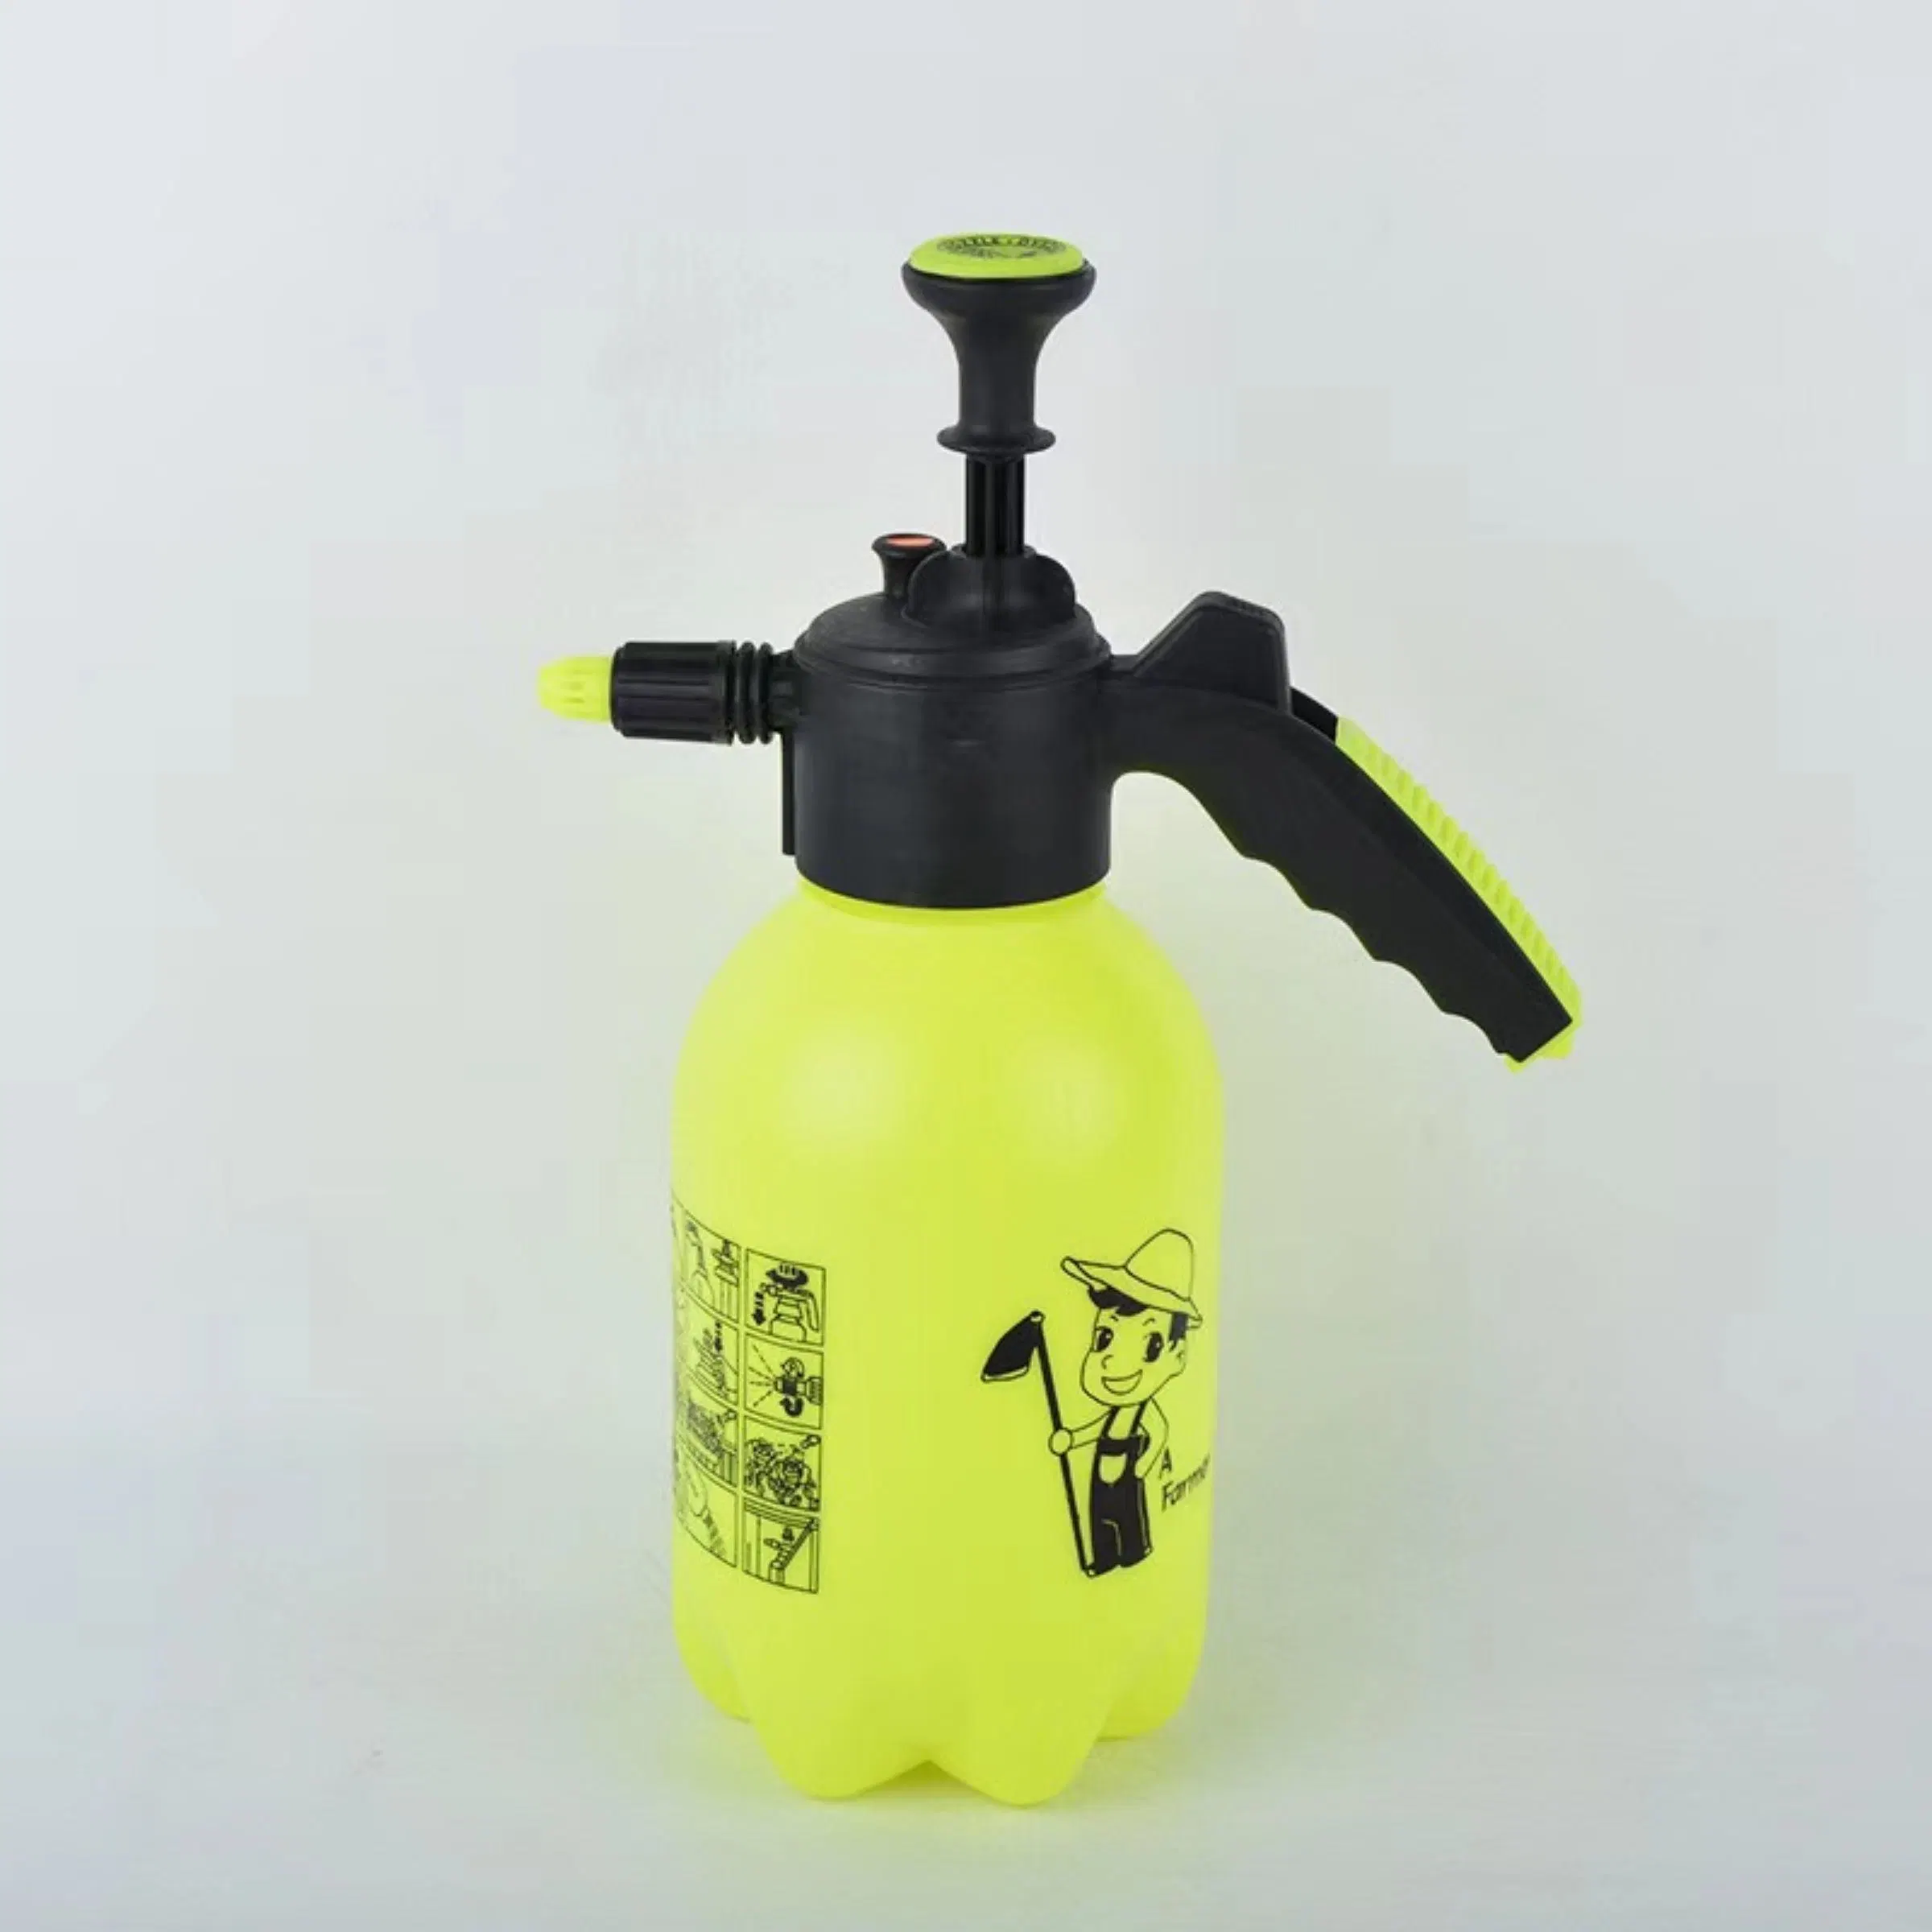 2liter Kunststoff-Pumpe Druck Einhand-Druck-Sprüher Flasche Streuseln für Dünger, Herbizide und Pestizide Bl10106